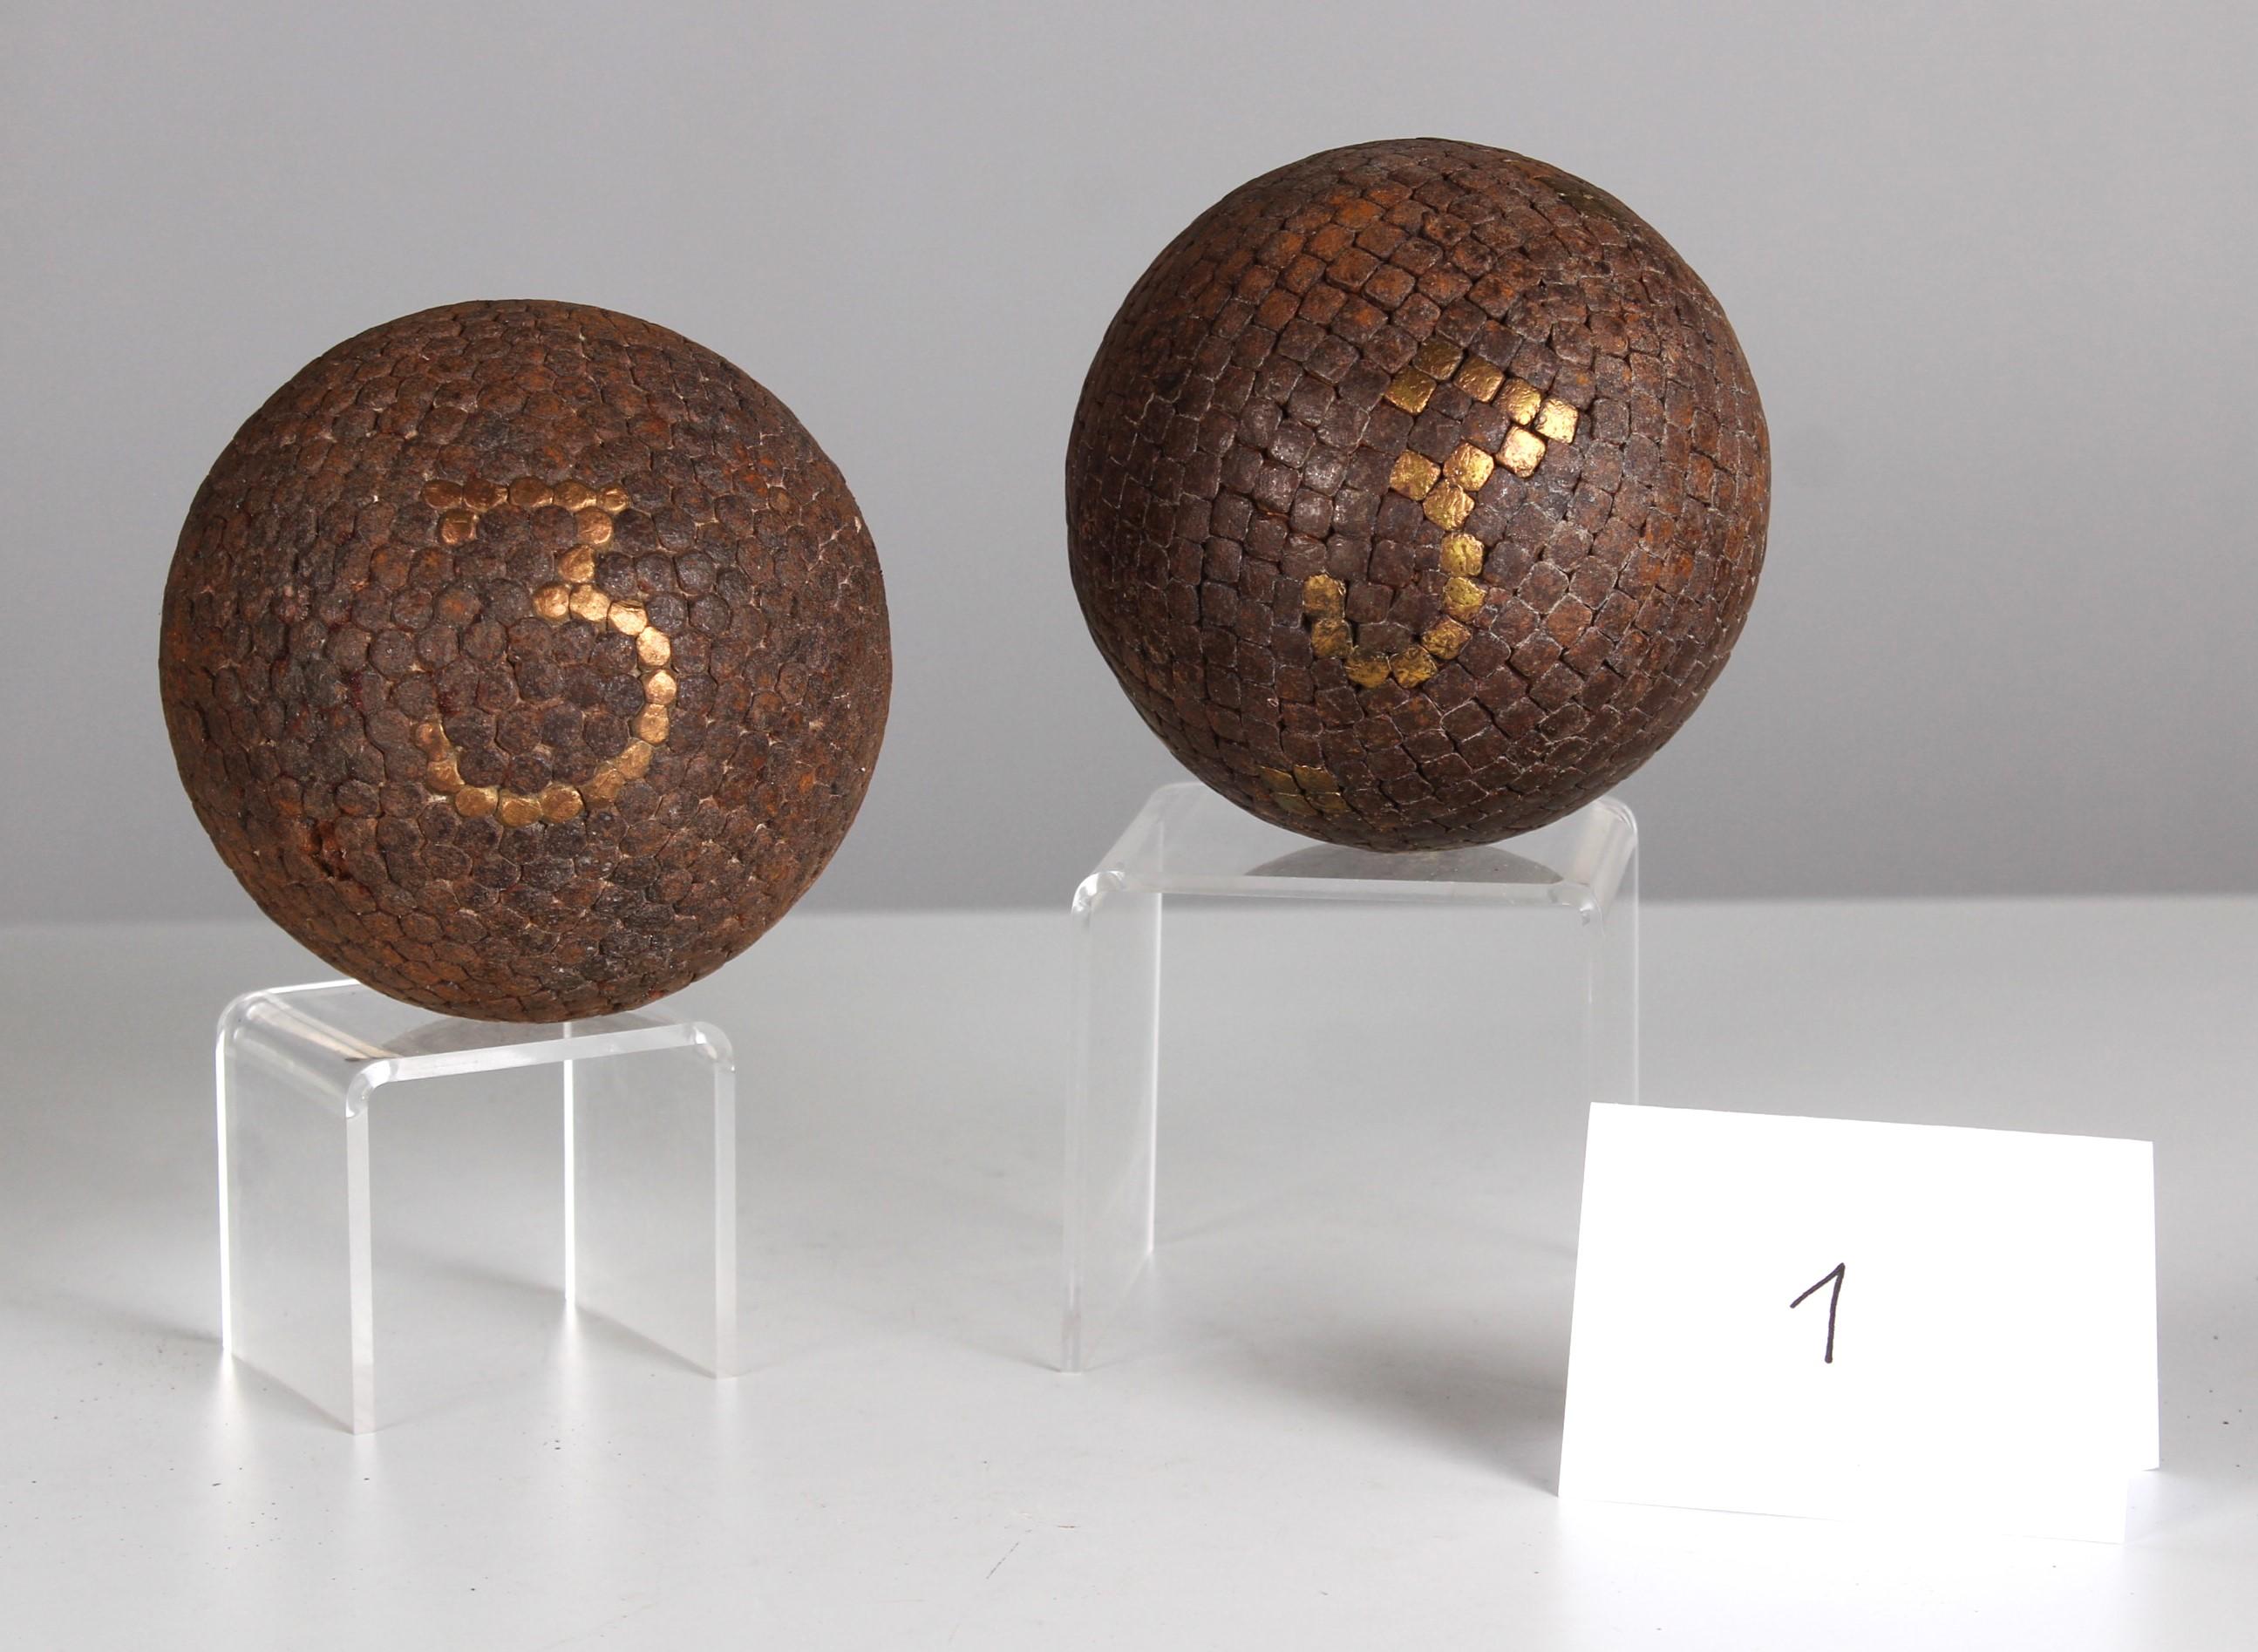 Belle et unique paire de boules, France, fin du 19e siècle.
Décorée du chiffre 